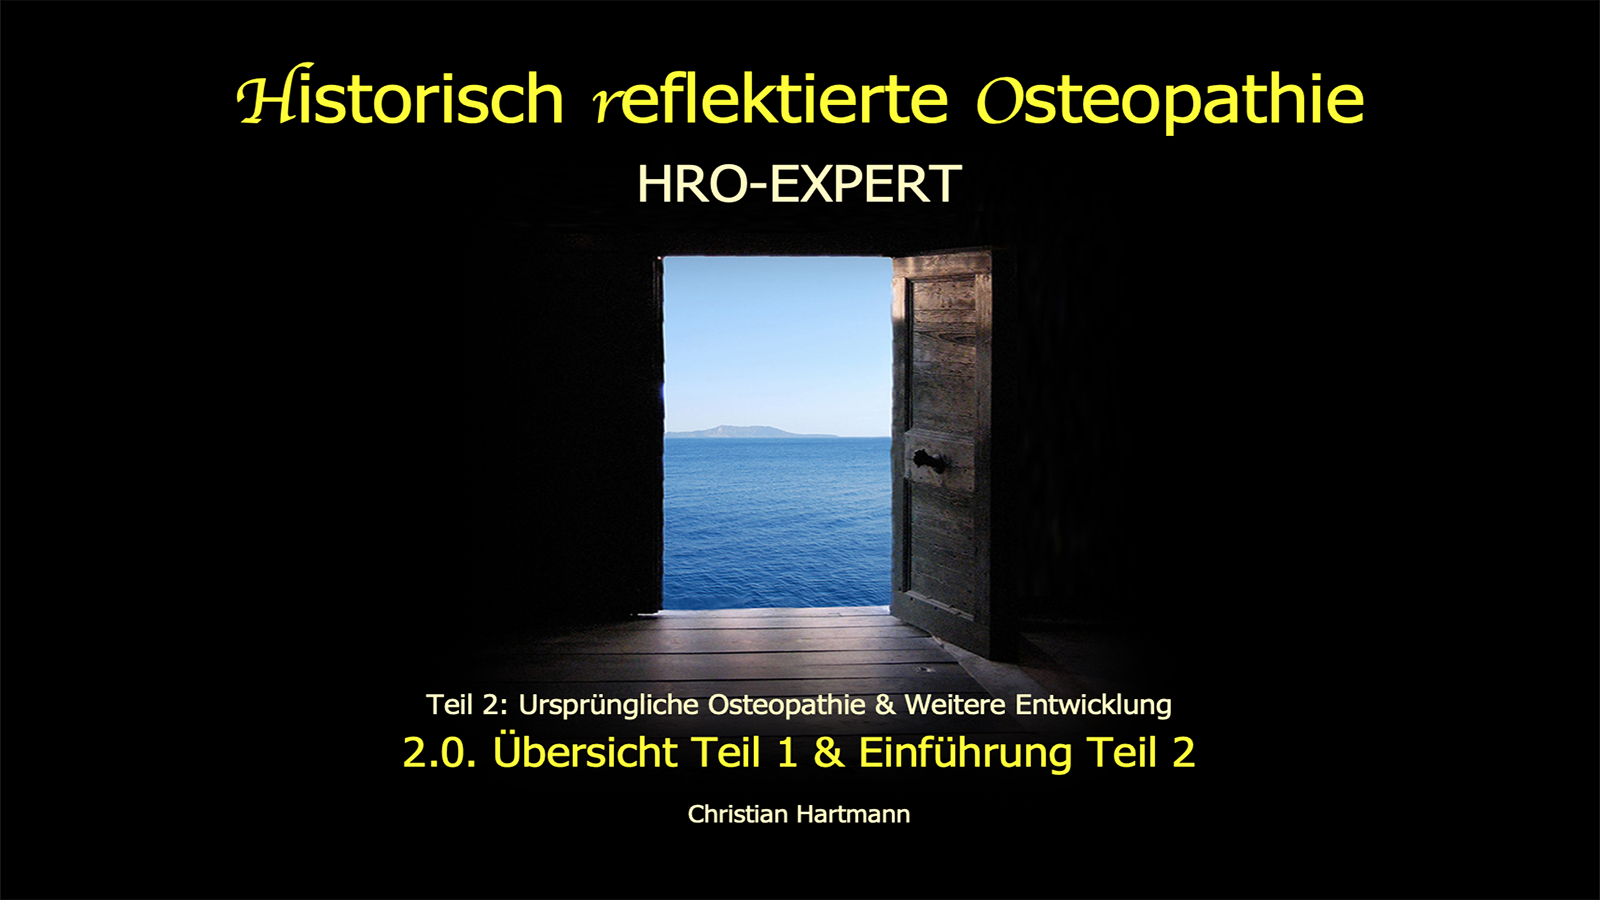 HRO-EXPERT: 2.0. Übersicht Teil 1 & Einführung Teil 2